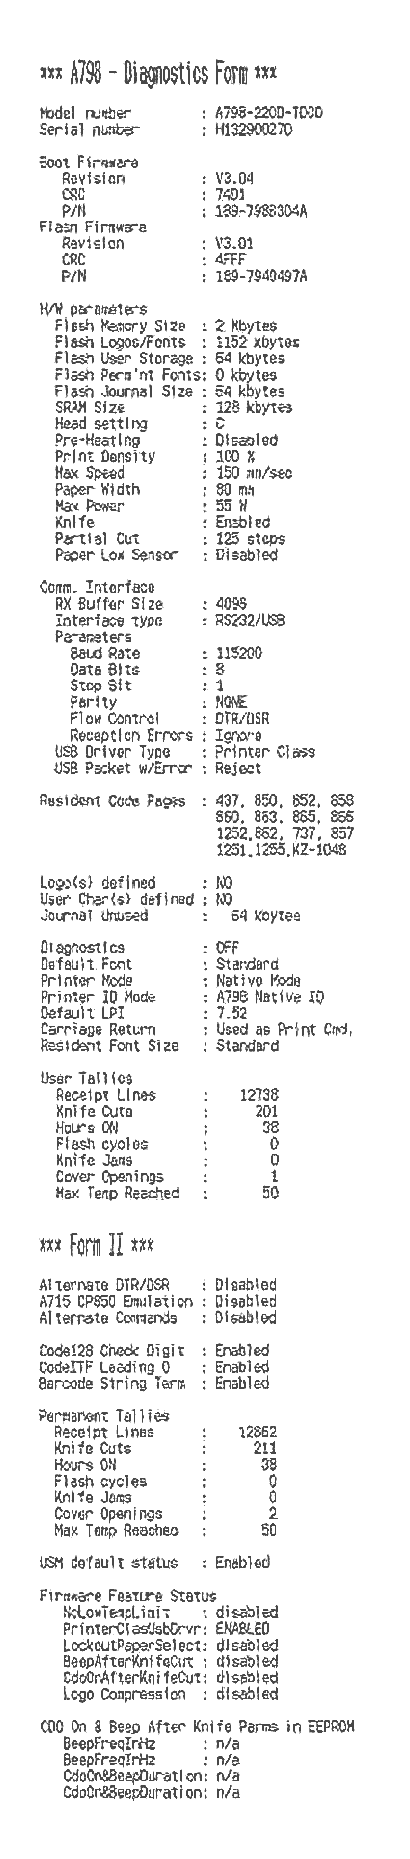 Printer status report RS-232